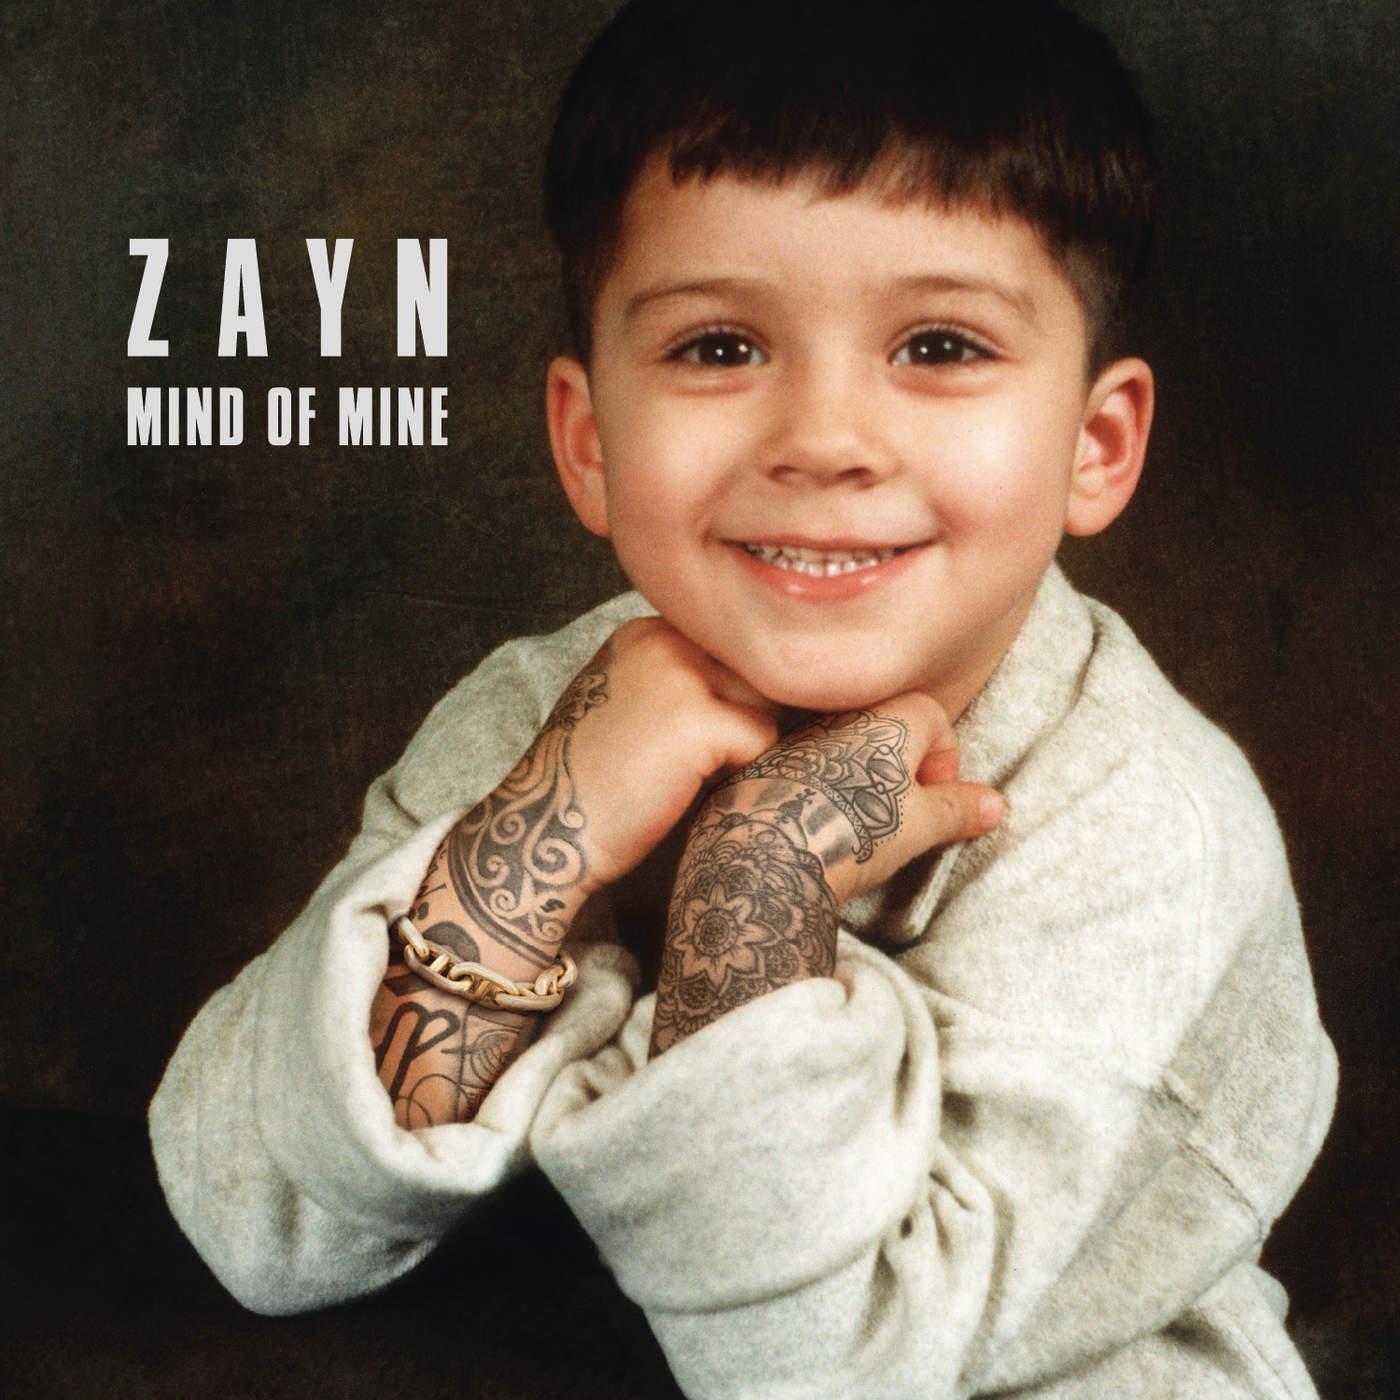 Album Review: “Mind of Mine” by ZAYN